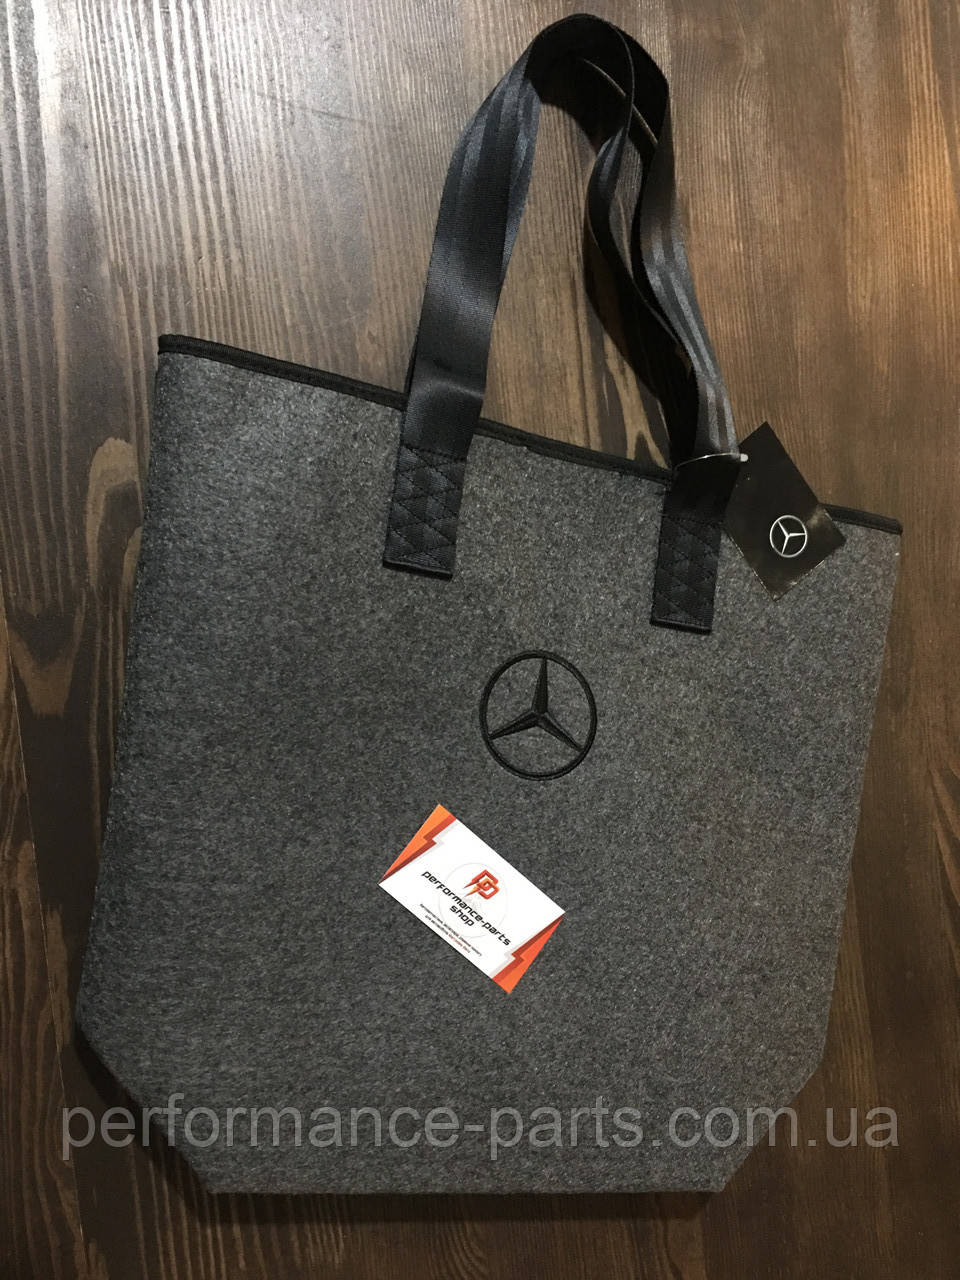 Жіноча сумка Mercedes-Benz Collection B66952989. Оригінал. Сірого кольору